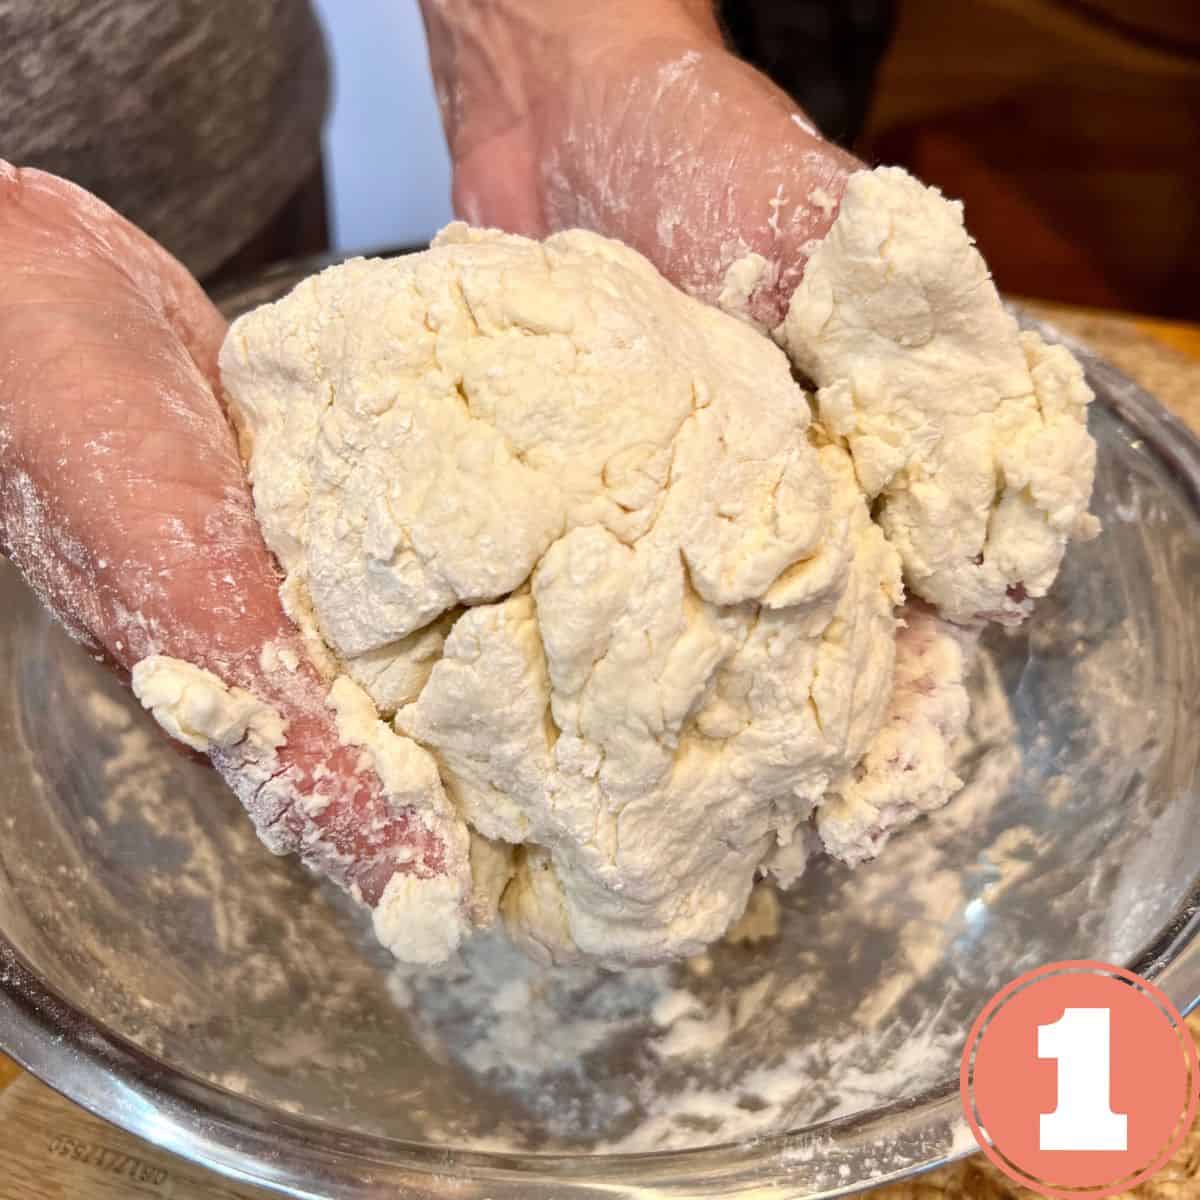 Hands holding a ball of dough